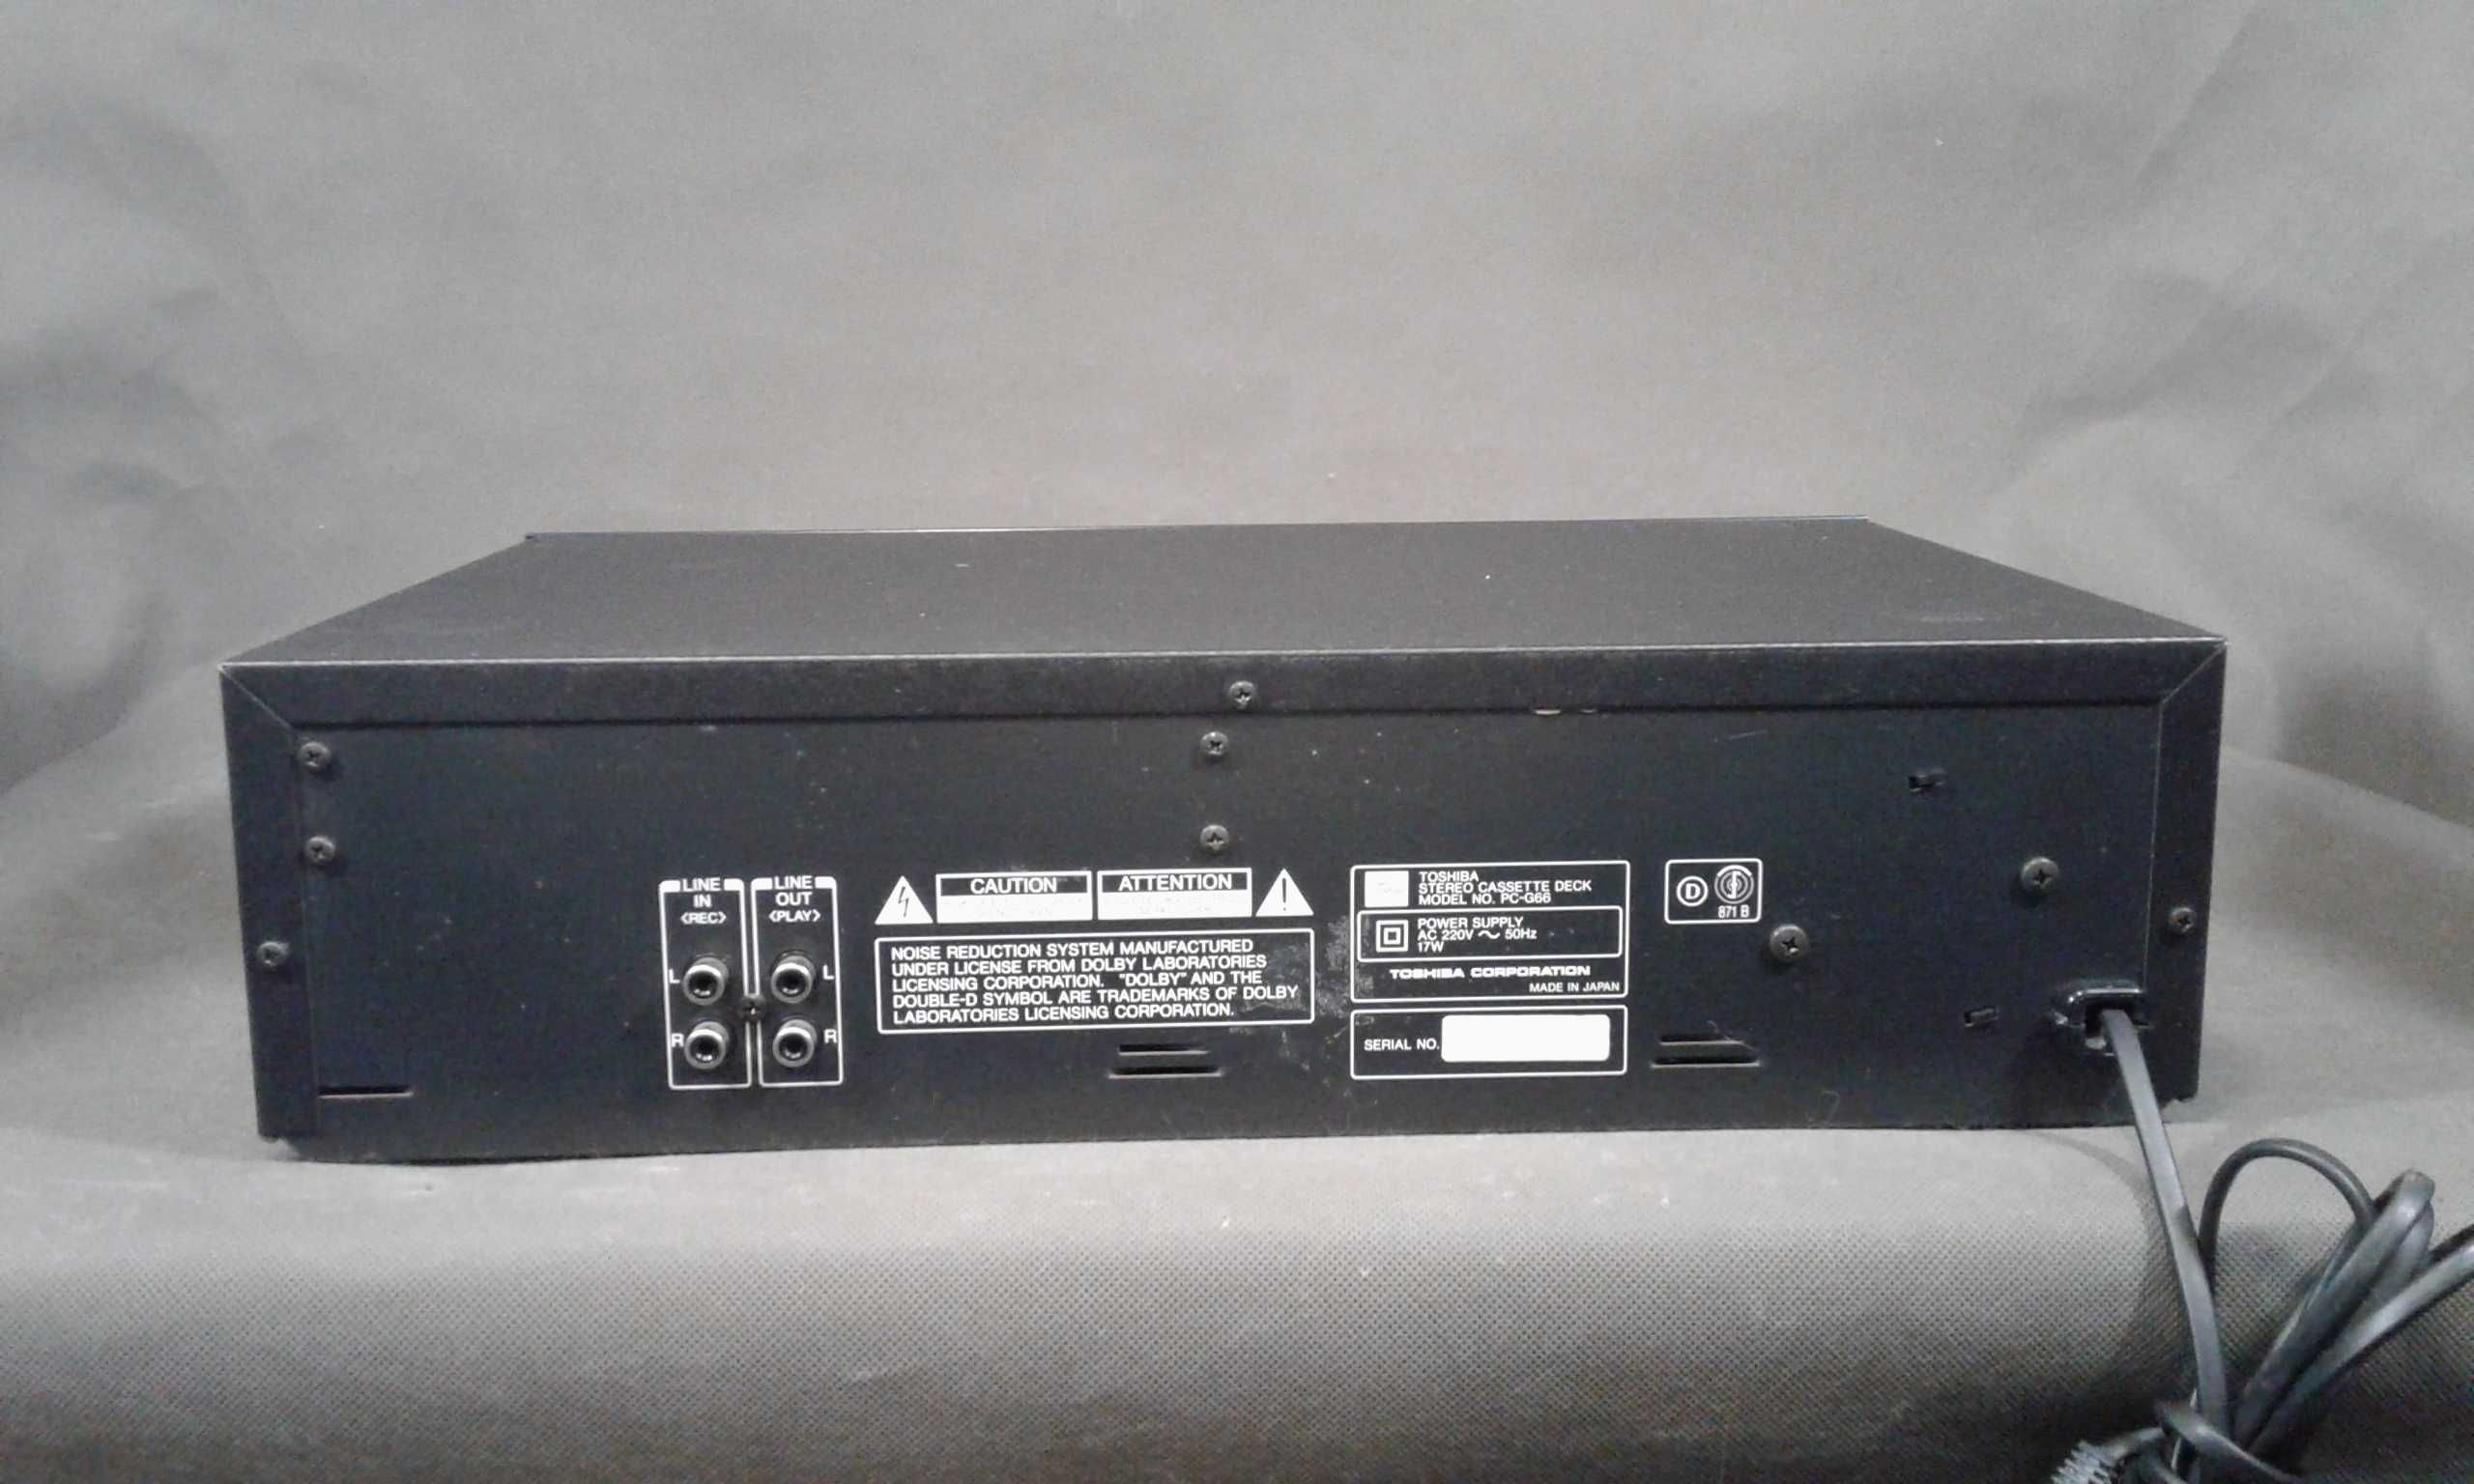 TOSHIBA PC-G66,magnetofon kasetowy